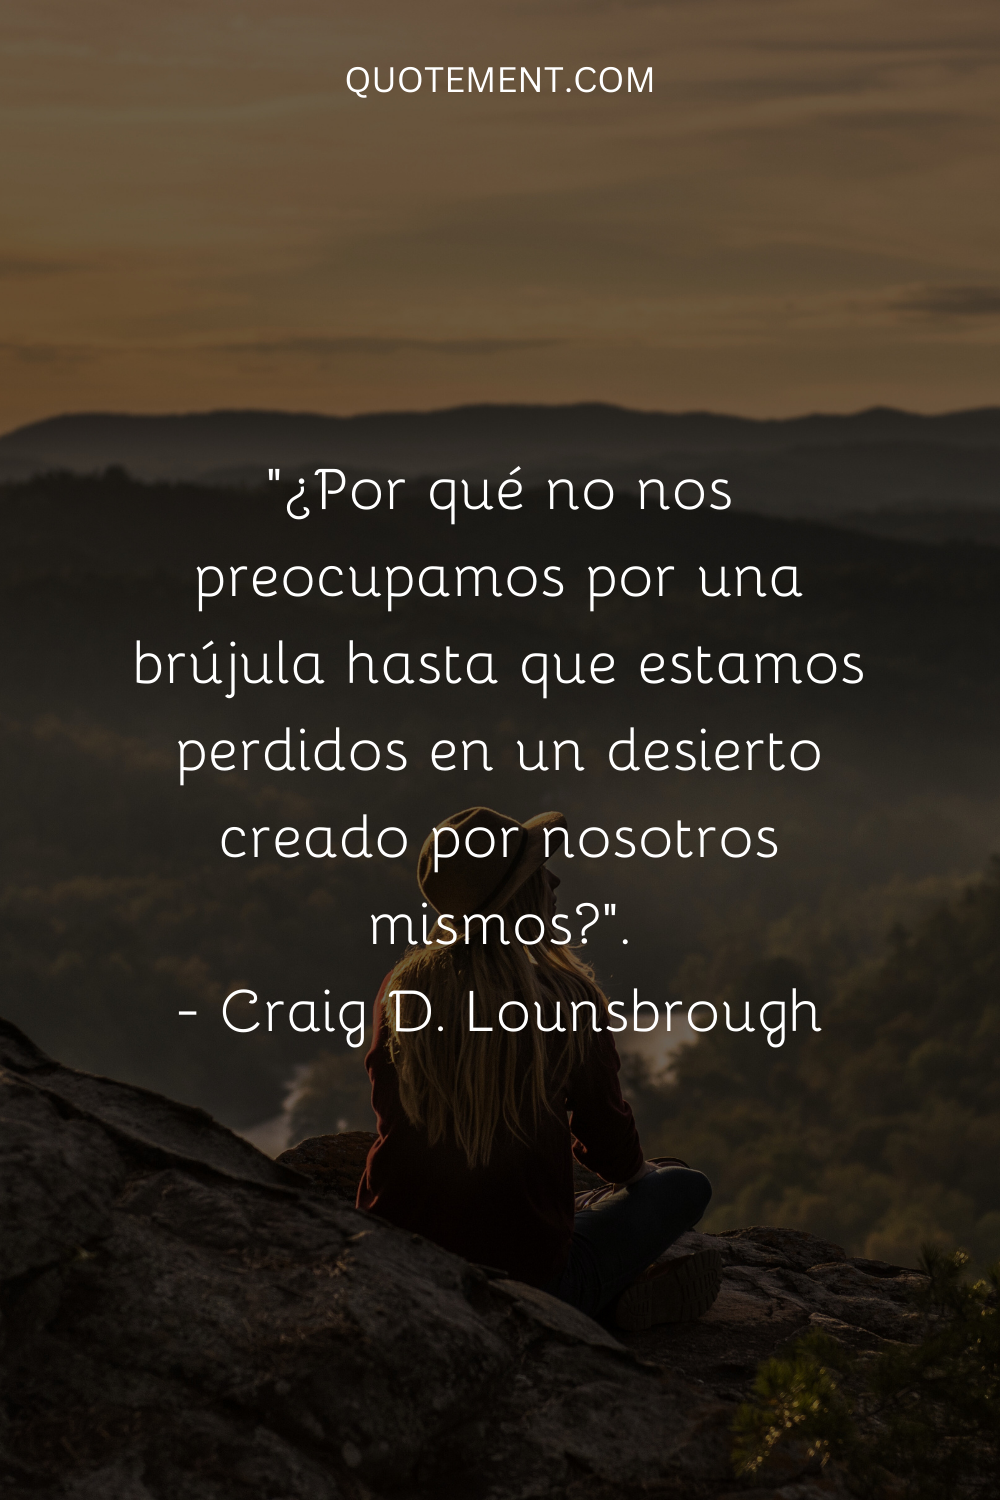 ¿Por qué no nos preocupamos por la brújula hasta que nos perdemos en un desierto creado por nosotros mismos?" - Craig D. Lounsbrough